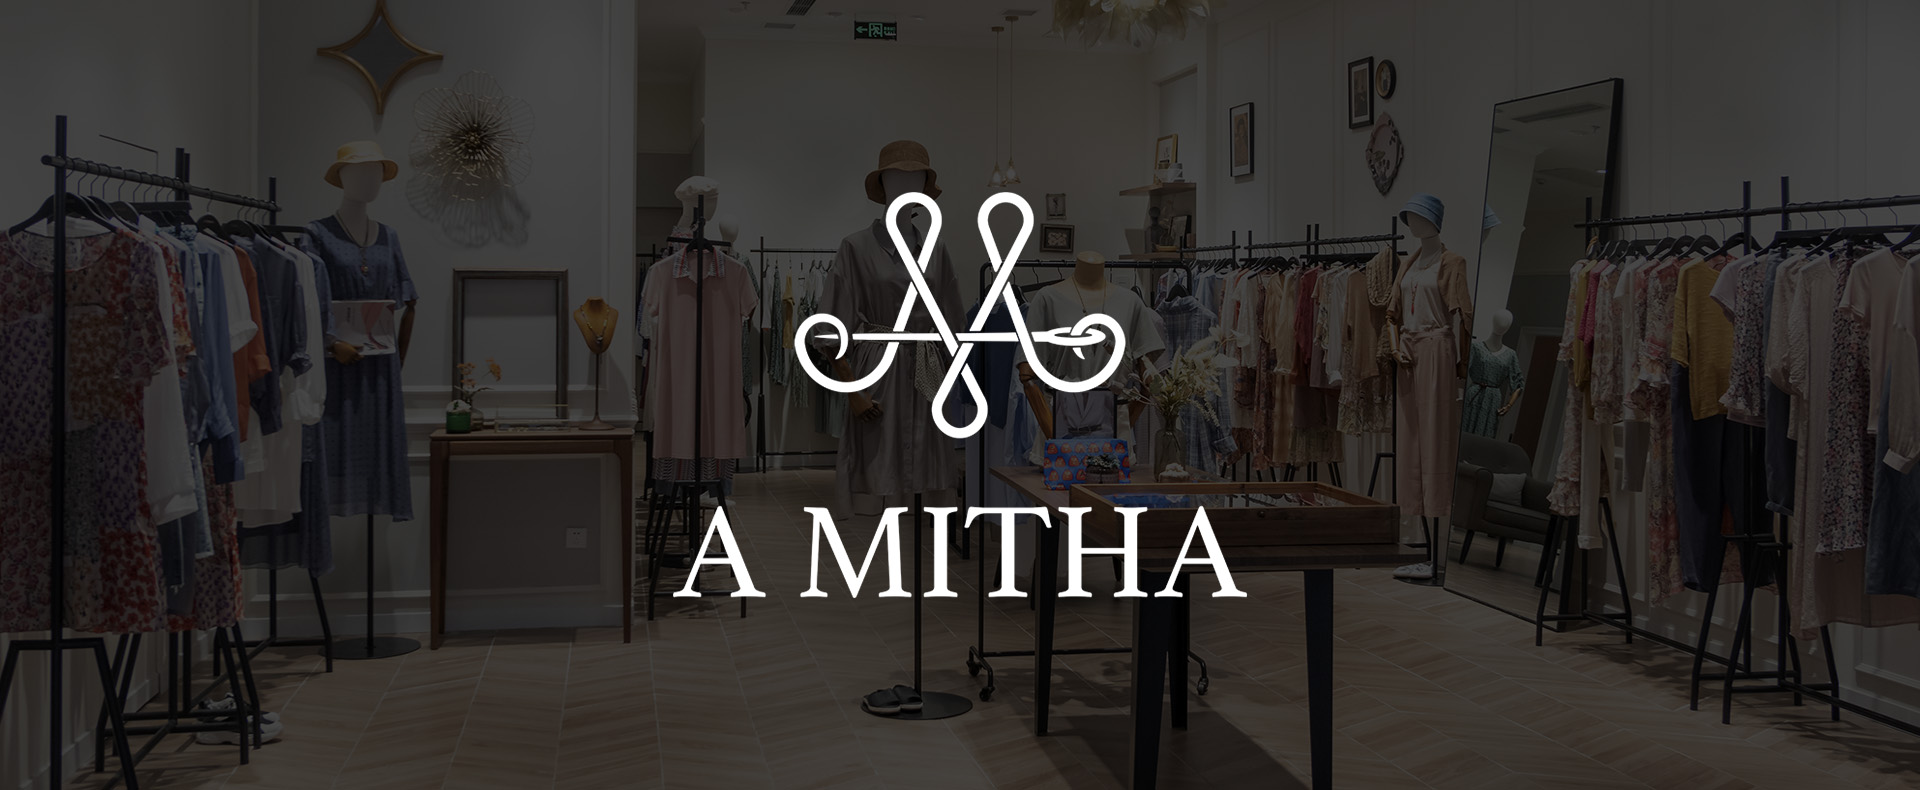 A Mitha - Loja de roupas femininas.